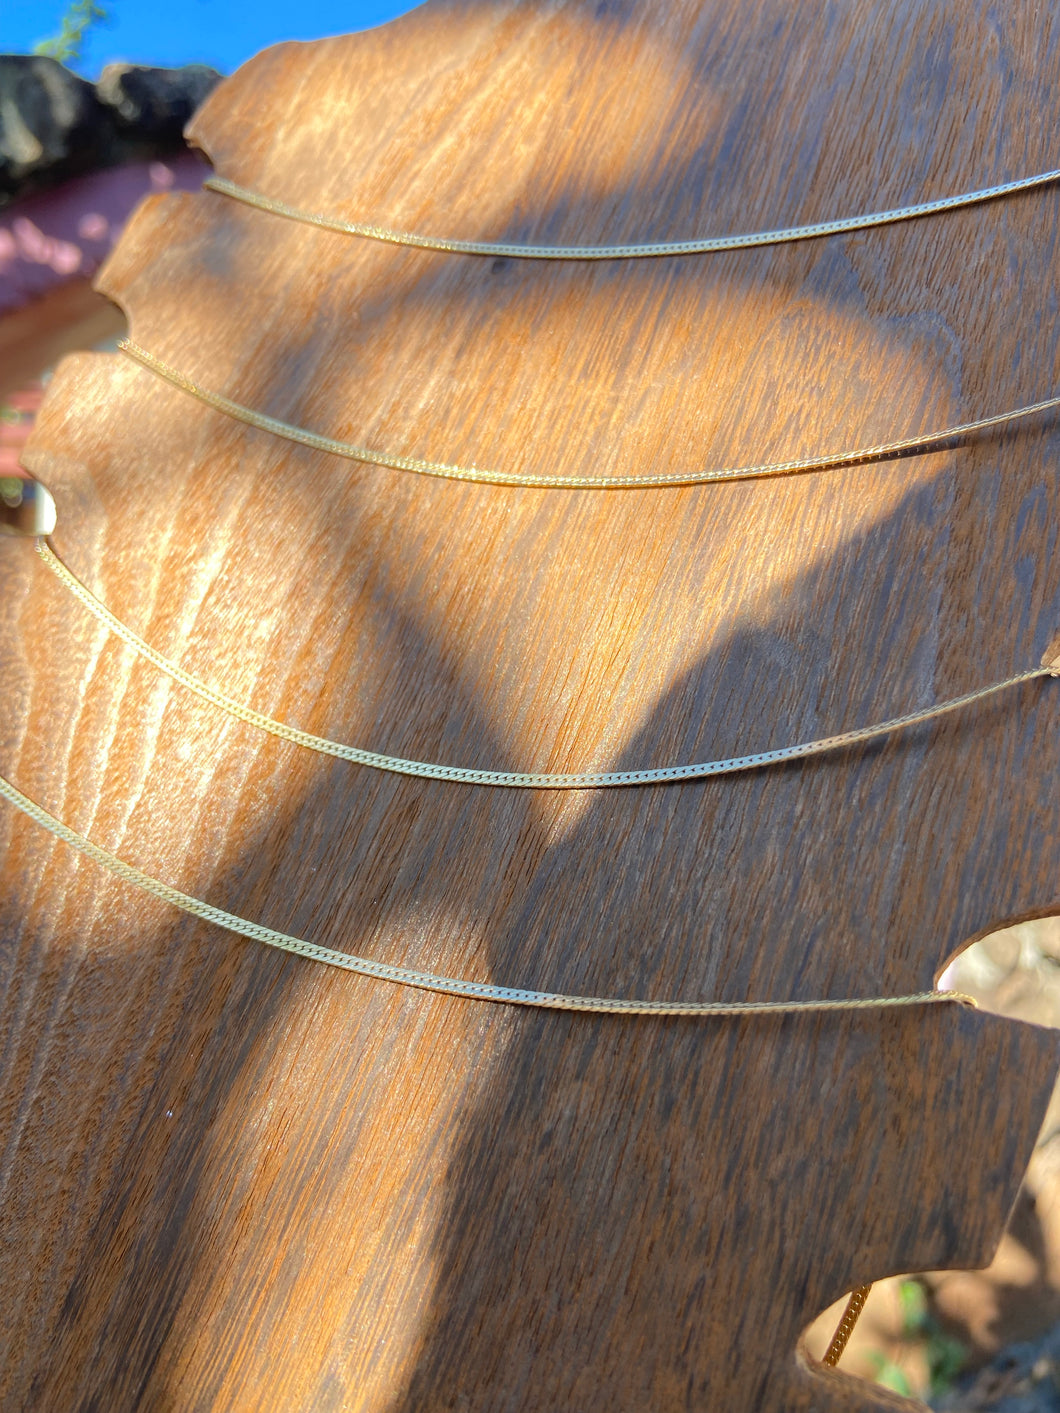 Herringbone Necklace